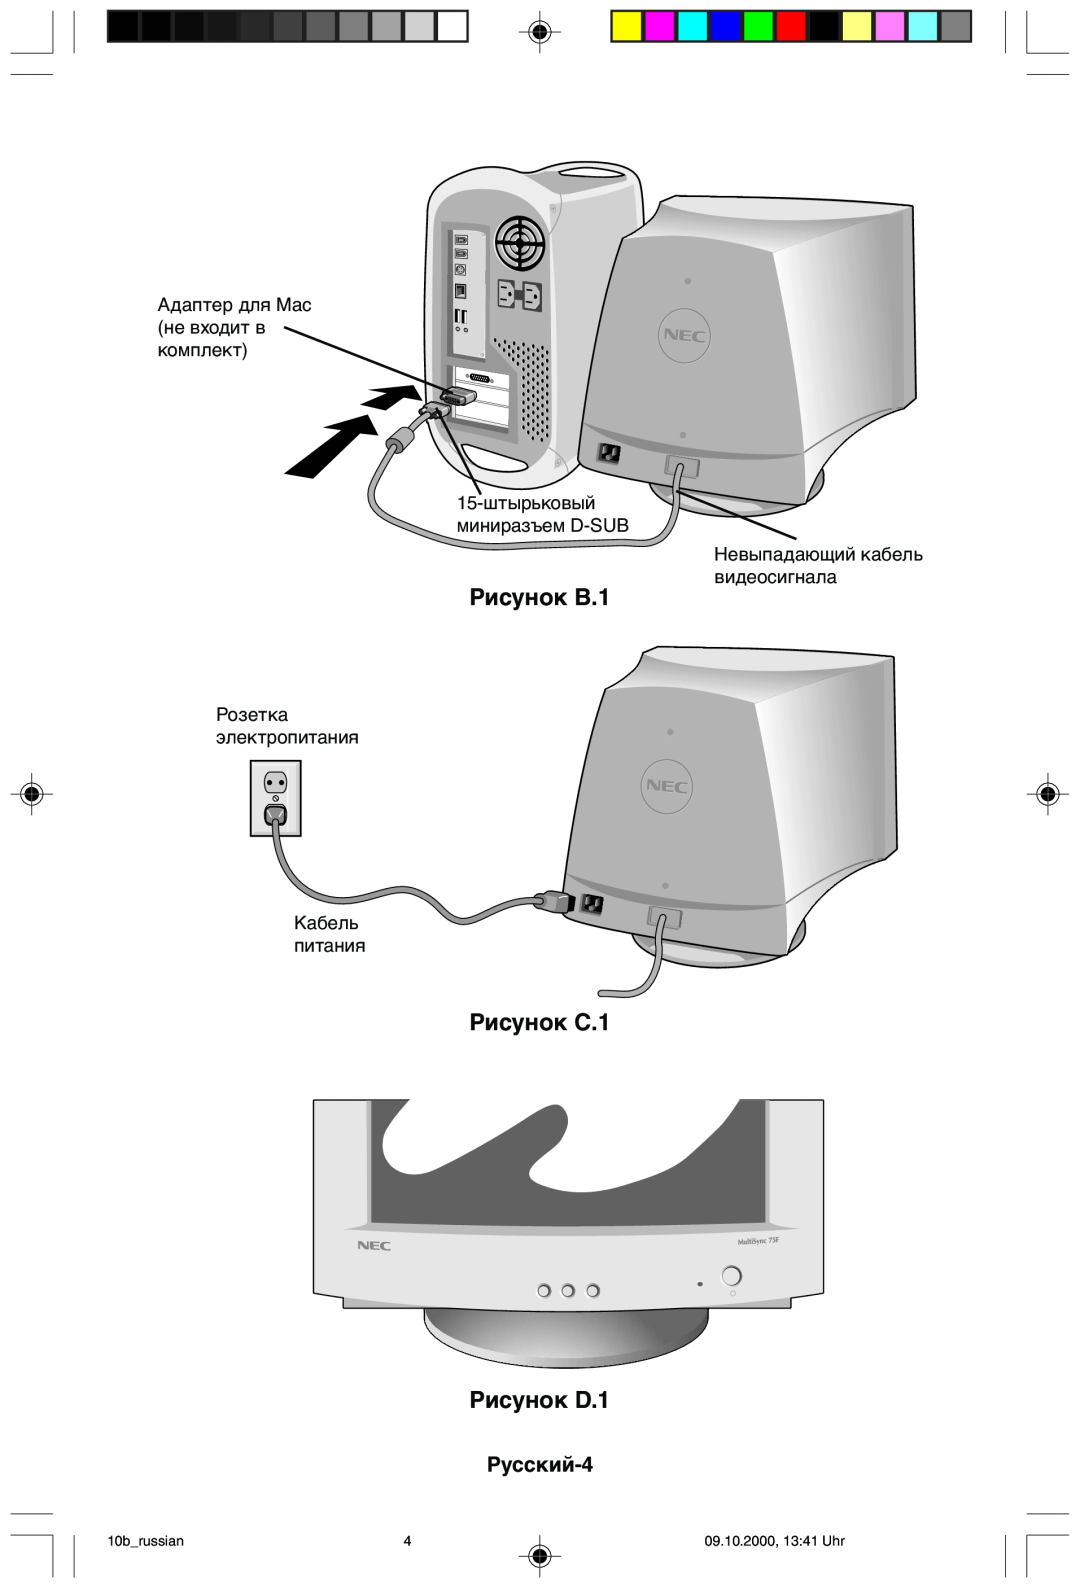 NEC 95F Адаптер для Mac не входит в комплект 15-штырьковый миниразъем D-SUB, Невыпадающий кабель видеосигнала, 10brussian 